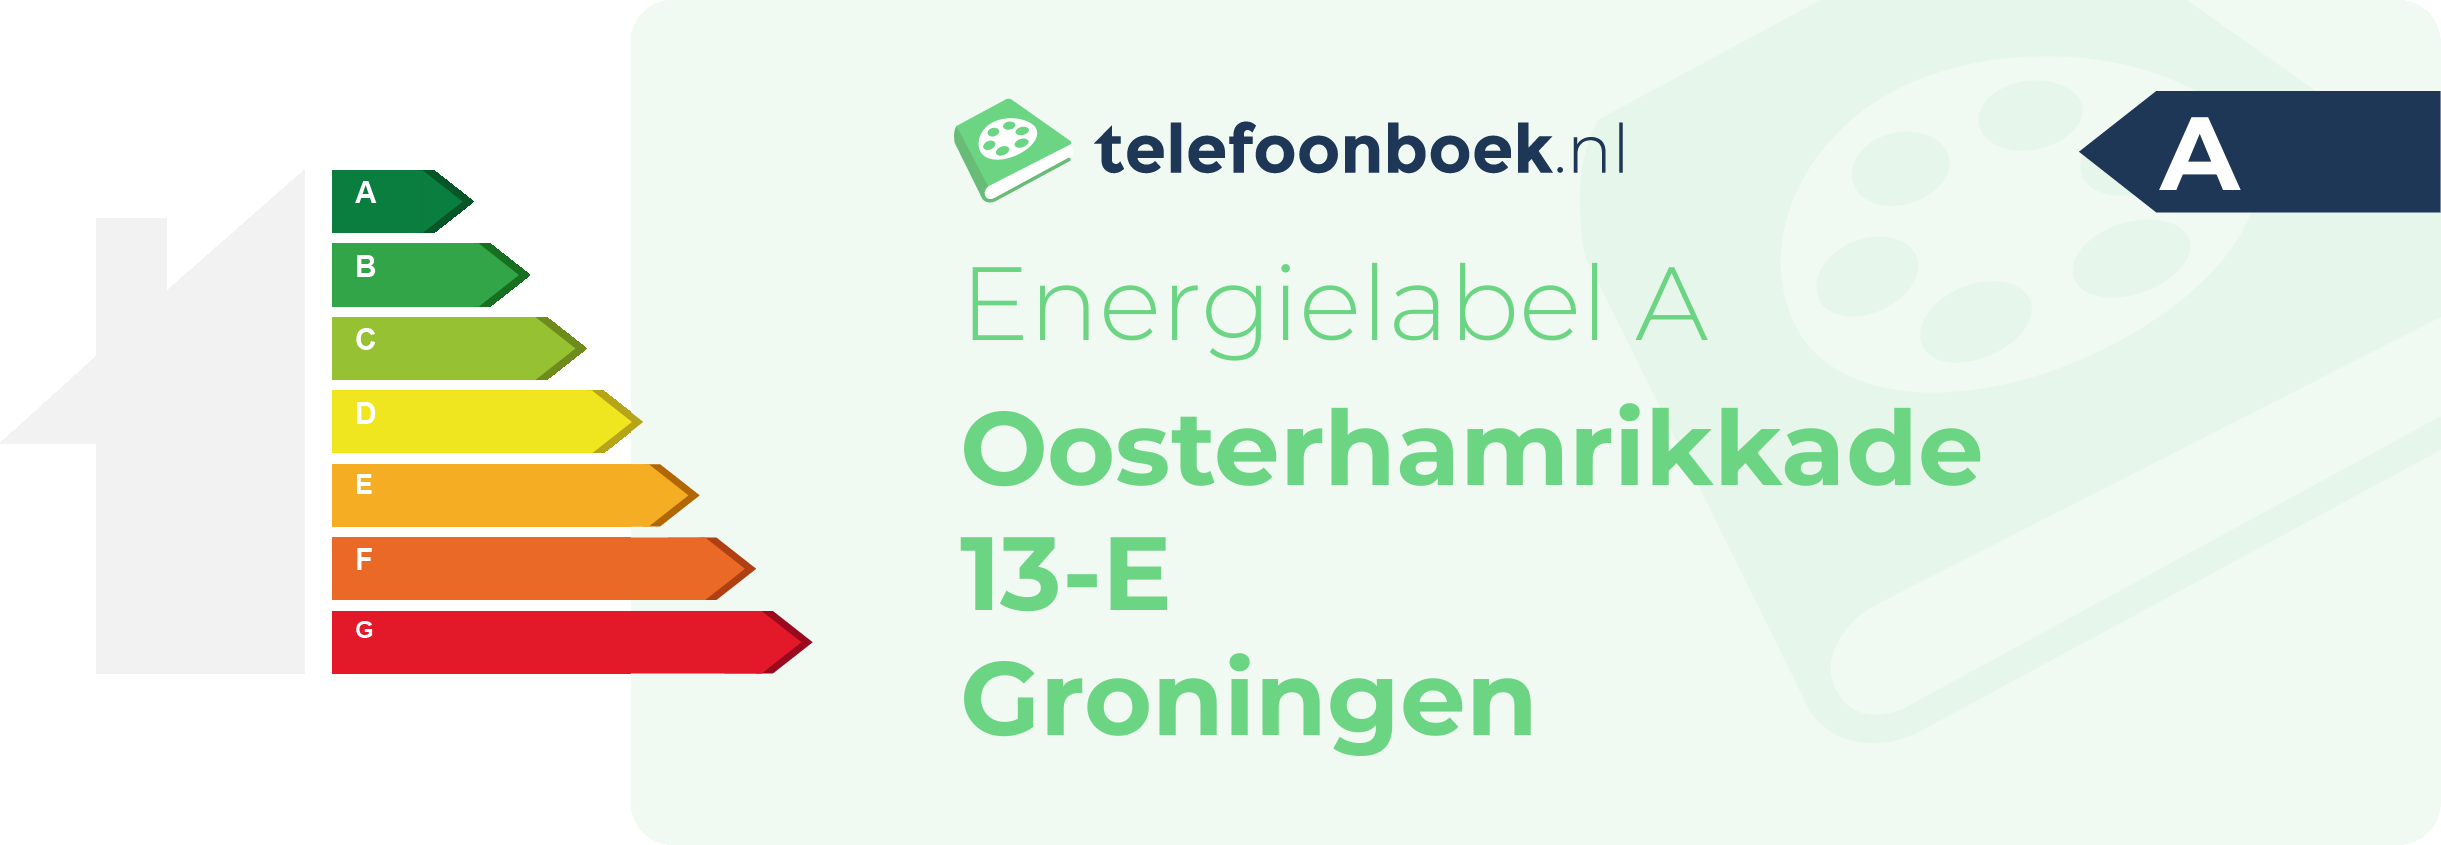 Energielabel Oosterhamrikkade 13-E Groningen